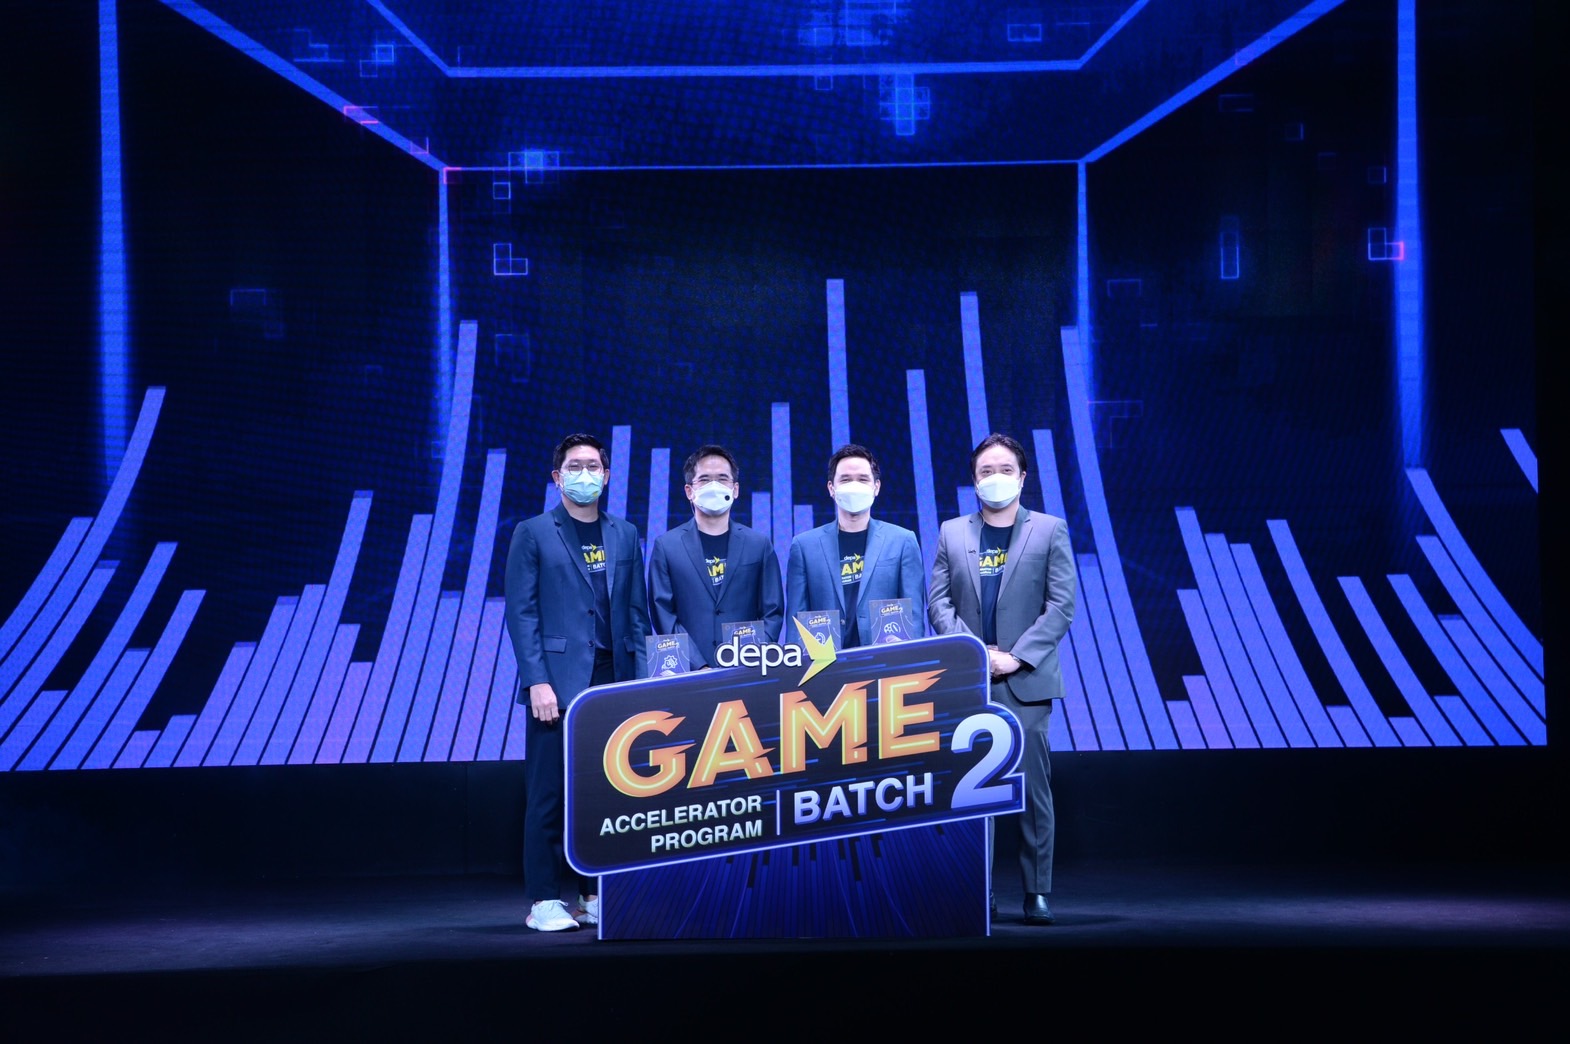 “ดีป้า” เปิดตัว depa Game Accelerator Program Batch 2 ติดปีกบุคลากรอุตสาหกรรมเกมไทยให้ได้มาตรฐานทัดเทียมระดับสากล